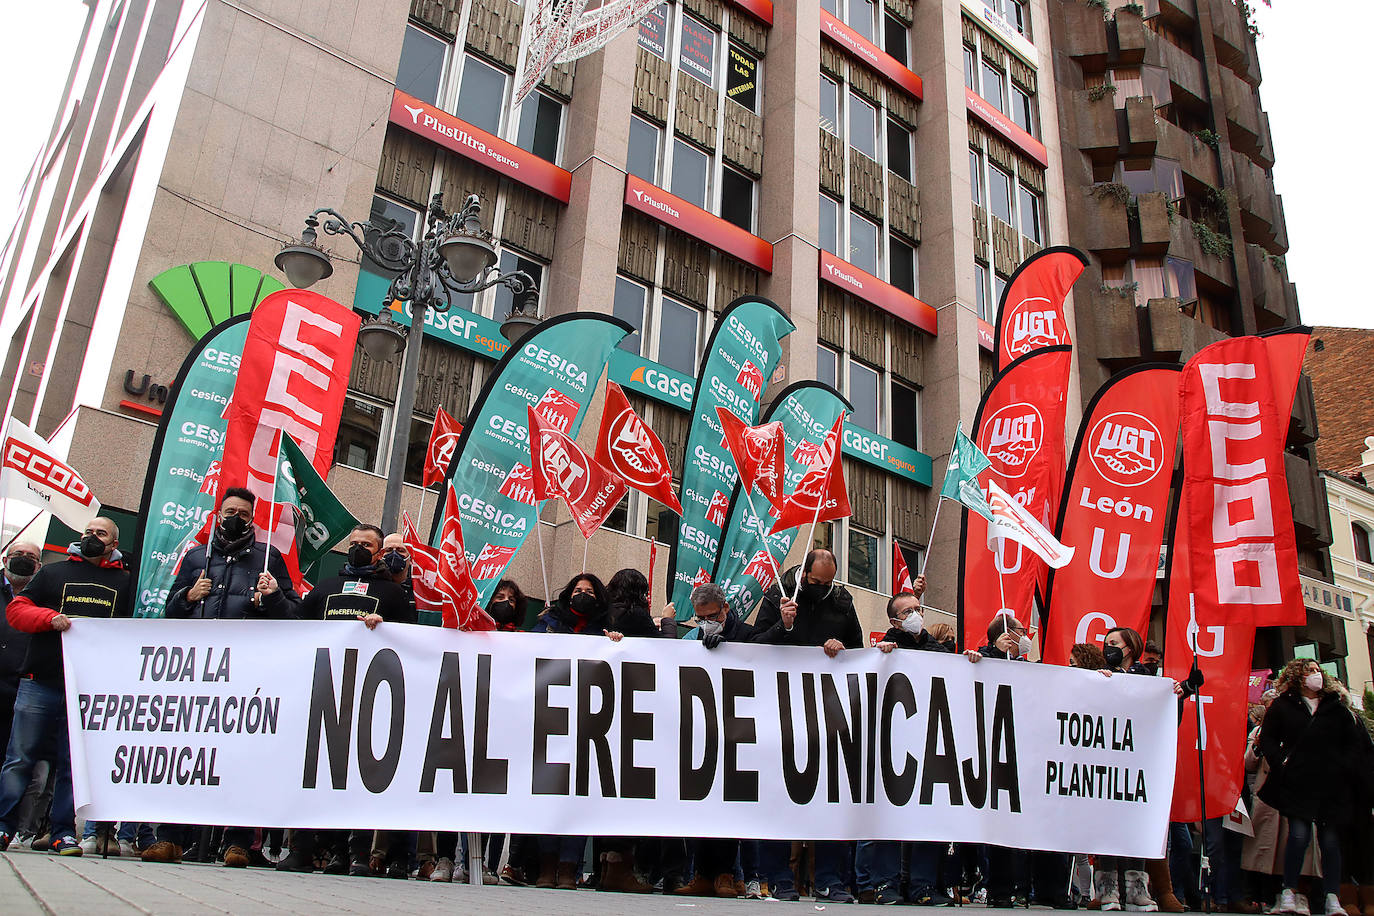 Nueva jornada de protestas de la plantilla de Unicaja